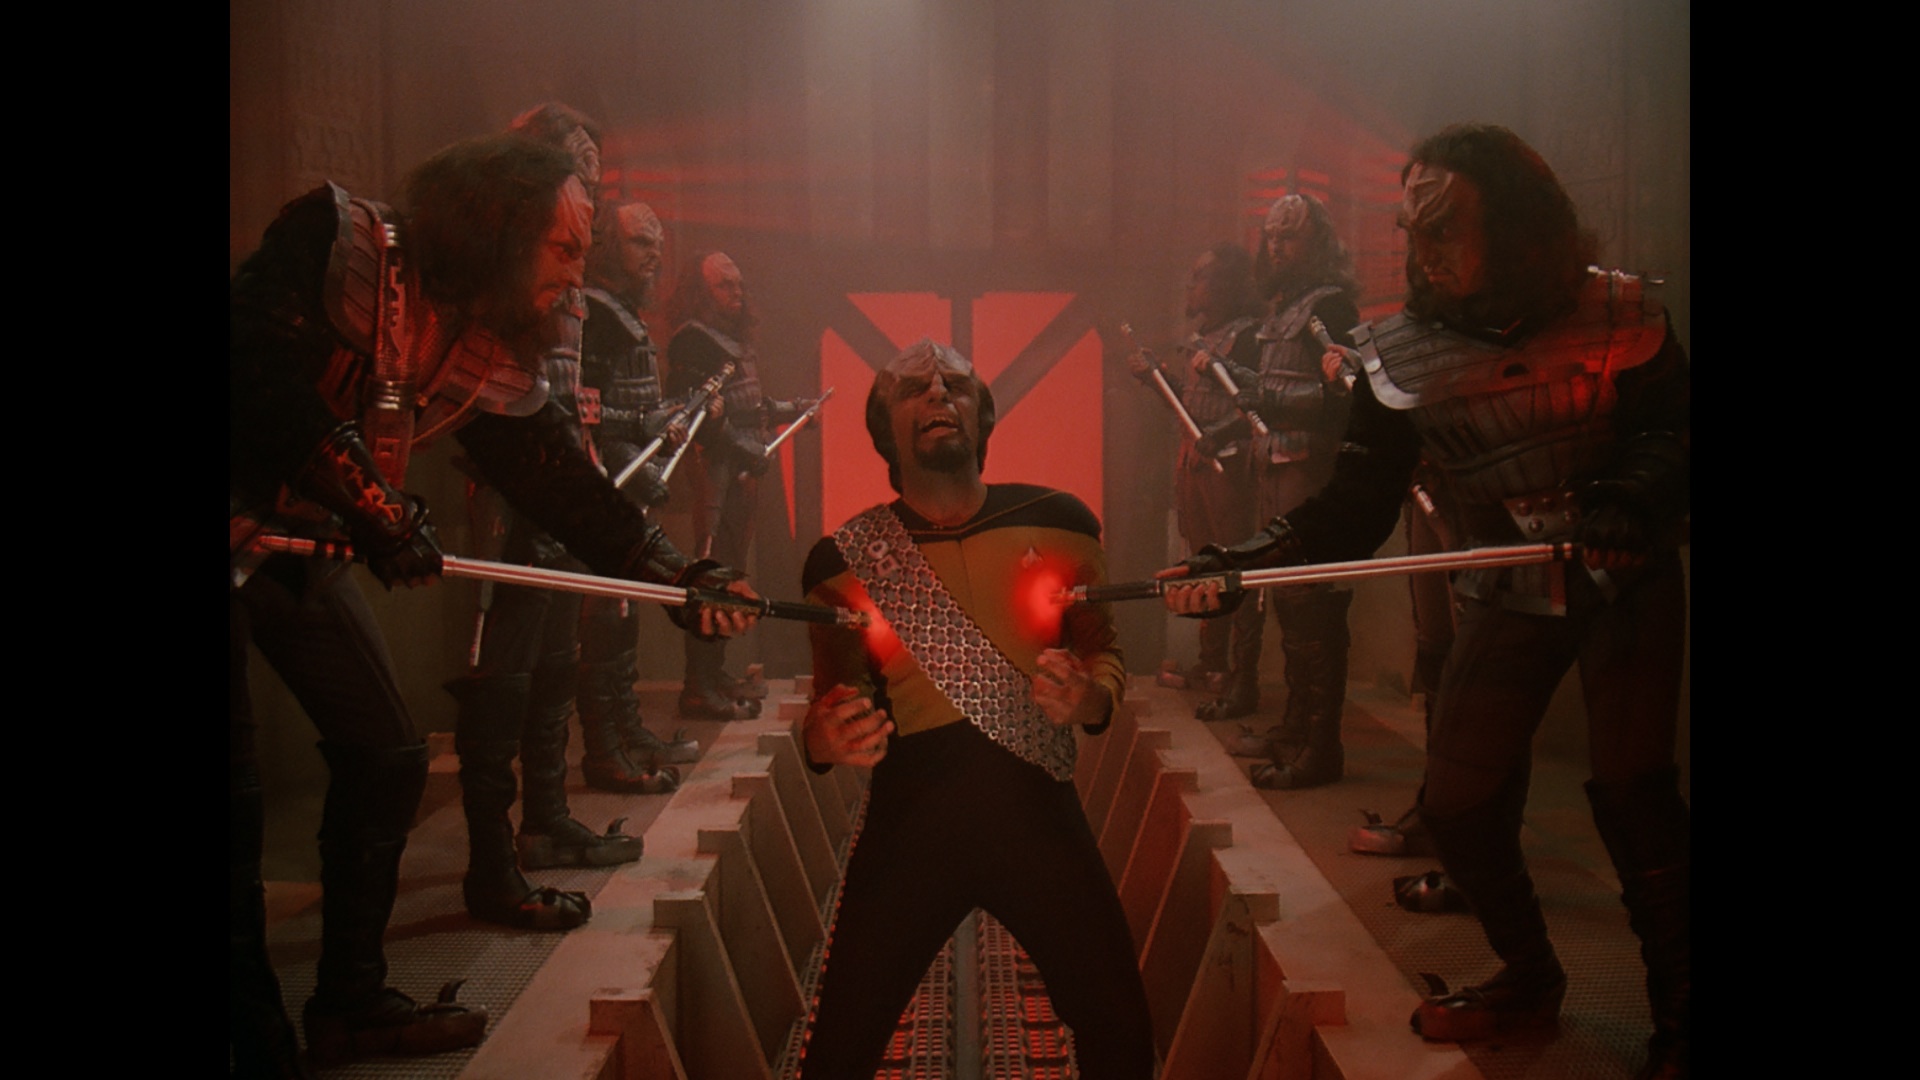 Still of Michael Dorn in Star Trek: The Next Generation (1987)